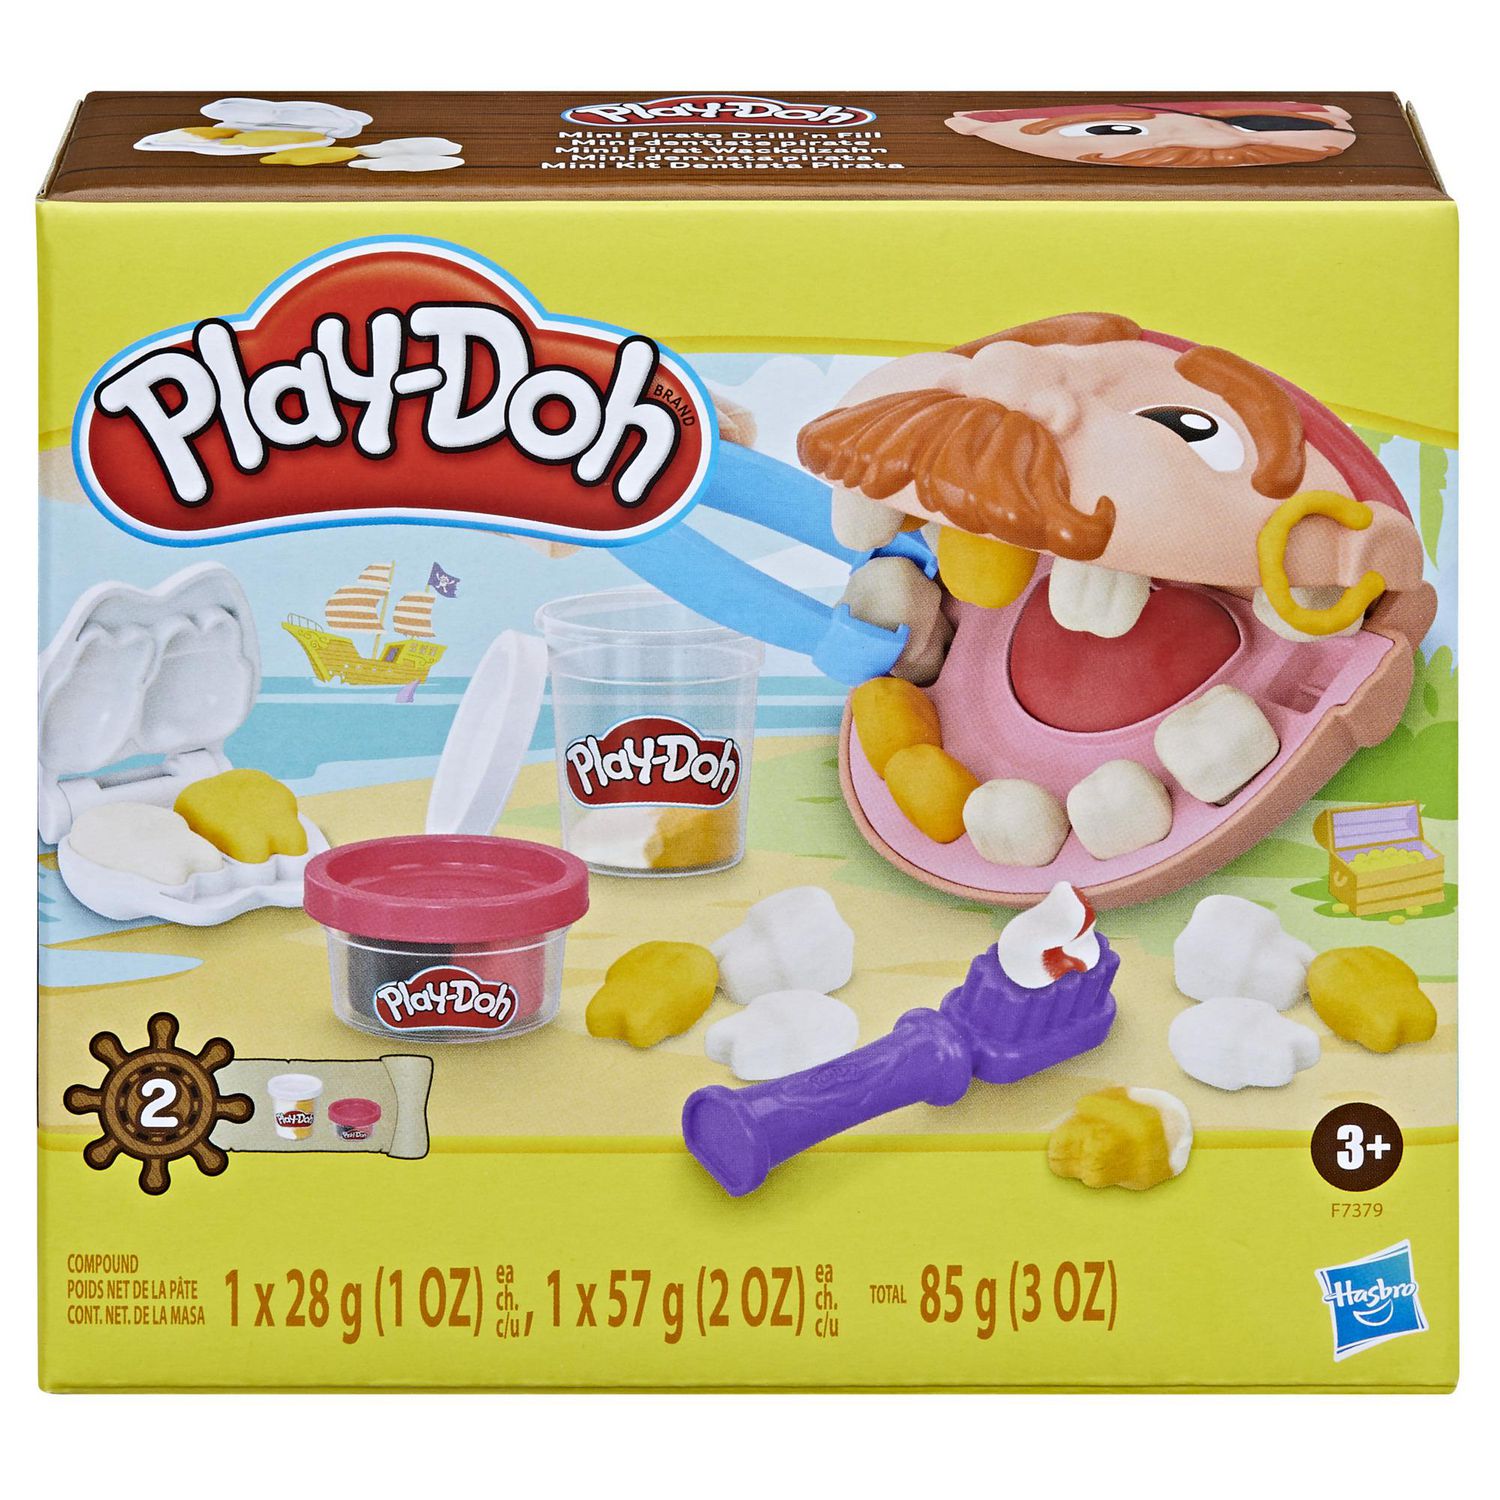 HASBRO Play-Doh Coffret, Le cabinet vétérinaire avec chien, mallette, avec  5 pots de pate à modeler pas cher 